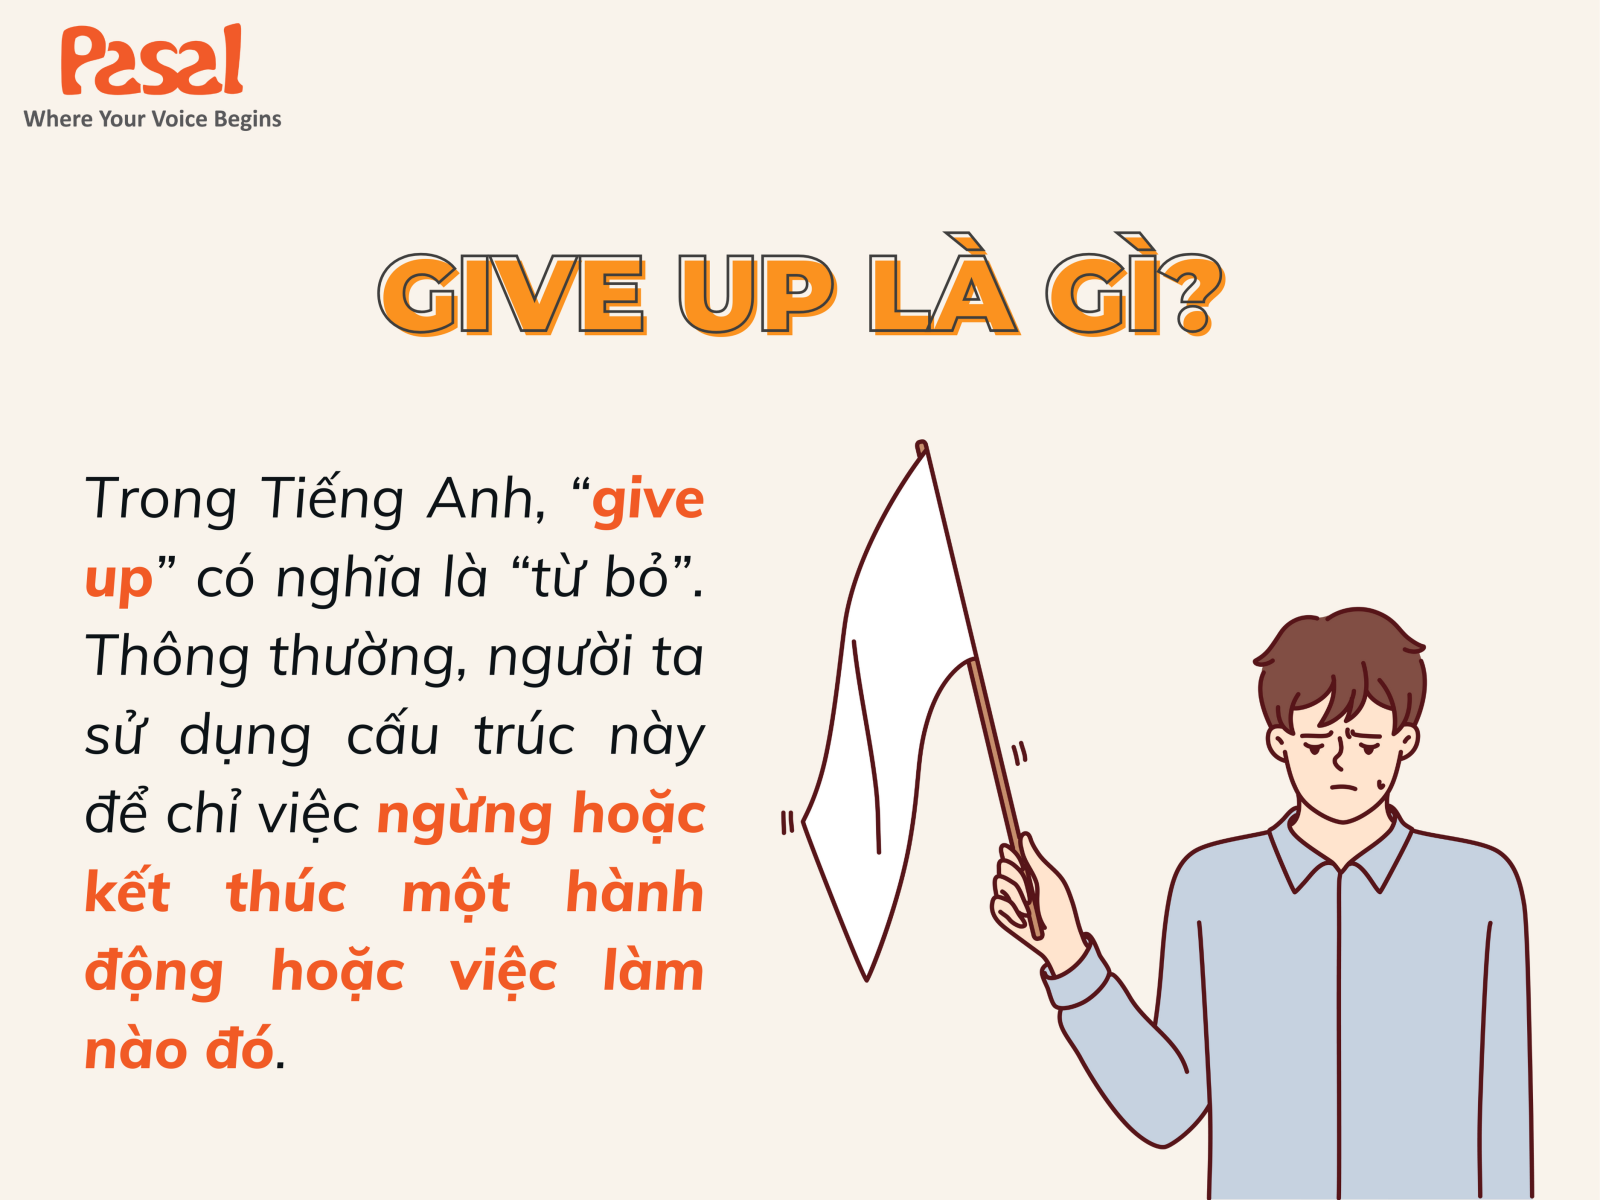 Give up là gì?